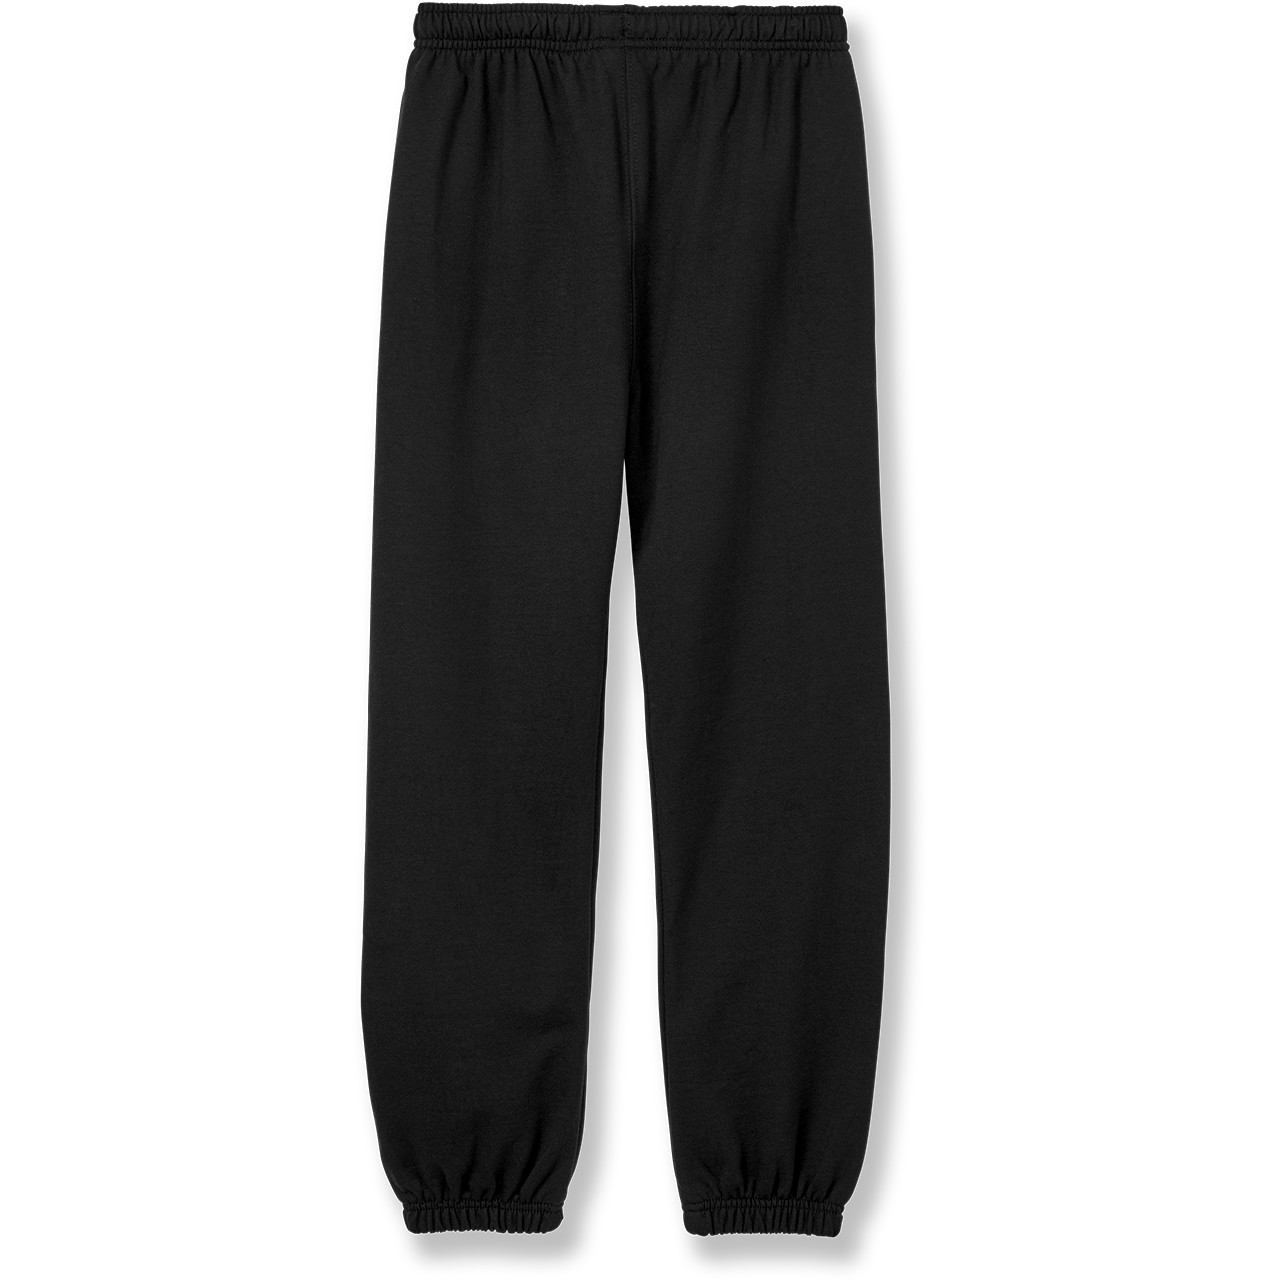 Heavyweight Sweatpants with heat transferred logo [NY327-865-OXFORD] -  FlynnO'Hara Uniforms